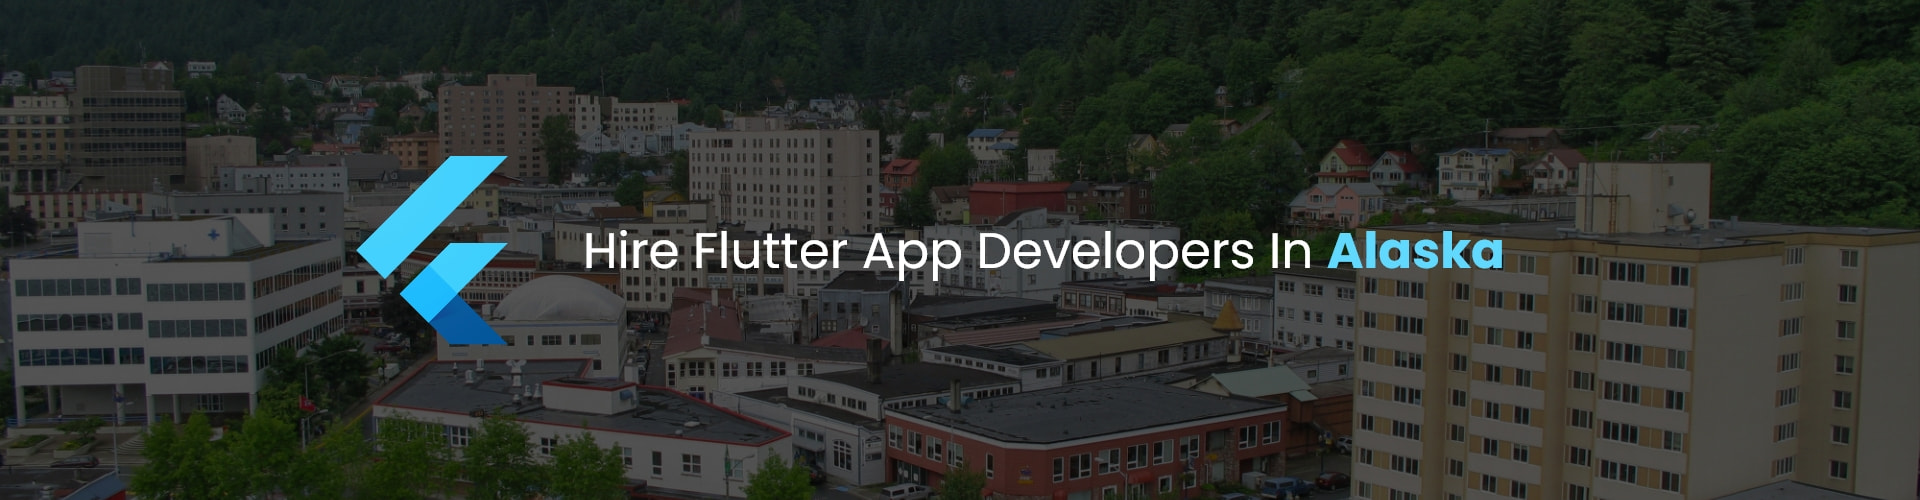 hire flutter app developers in alaska